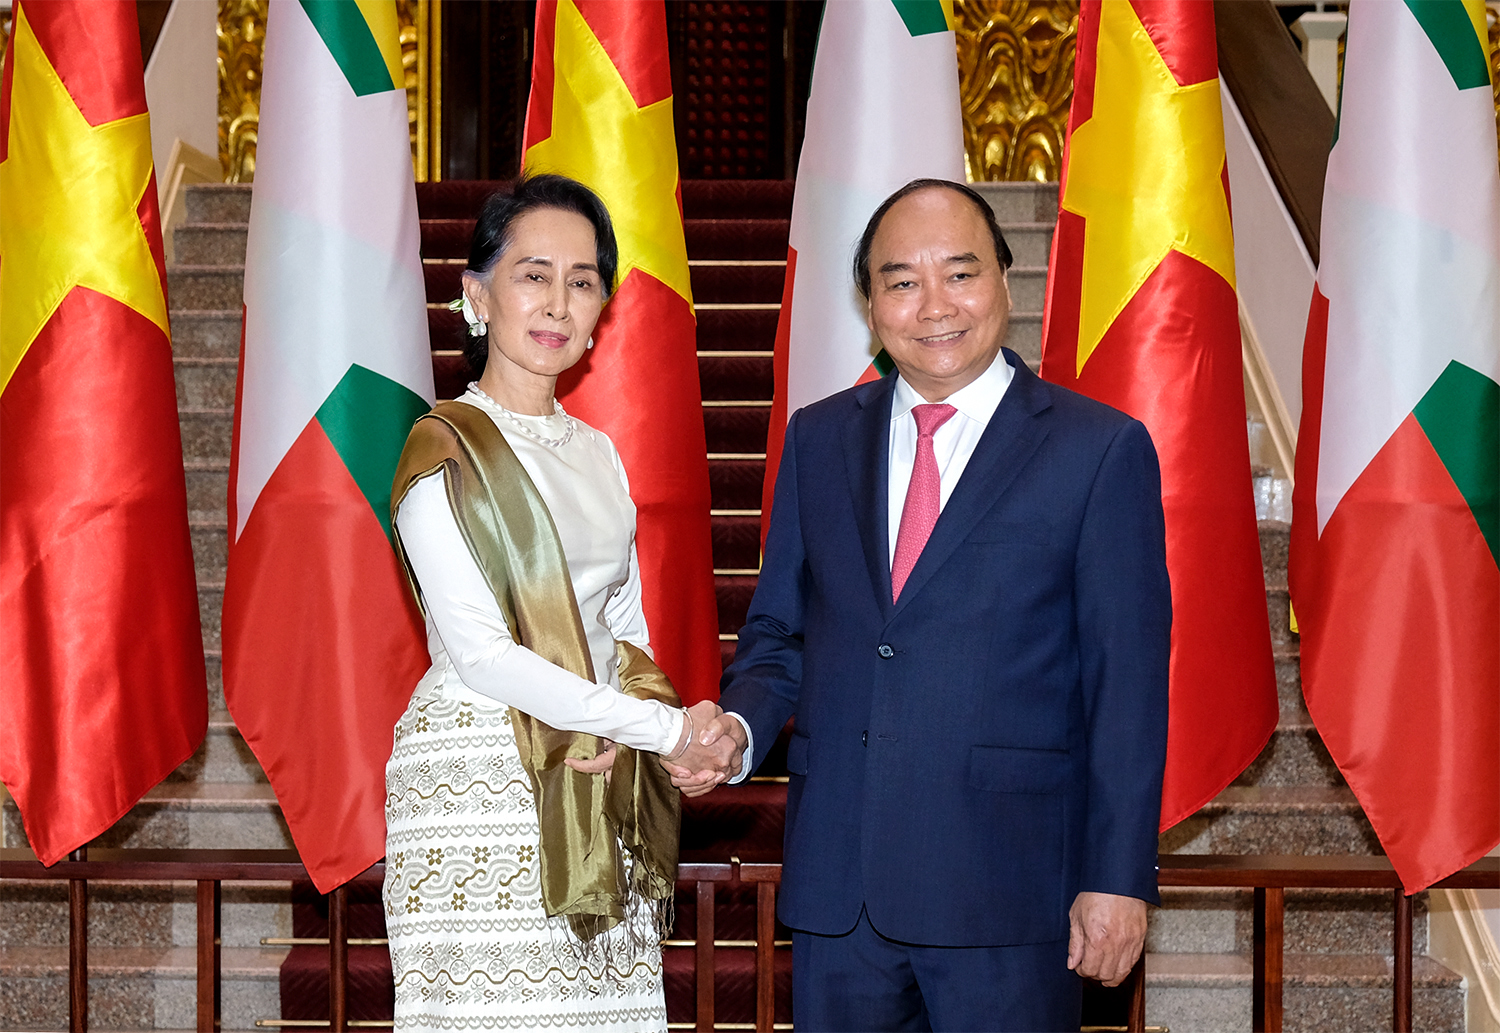 Thủ tướng Nguyễn Xuân Phúc và Cố vấn Nhà nước, Bộ trưởng Bộ Ngoại giao-Bộ trưởng Văn phòng Tổng thống Cộng hòa Liên bang Myanmar Aung San Suu Kyi. Ảnh: QUANG HIẾU - VGP